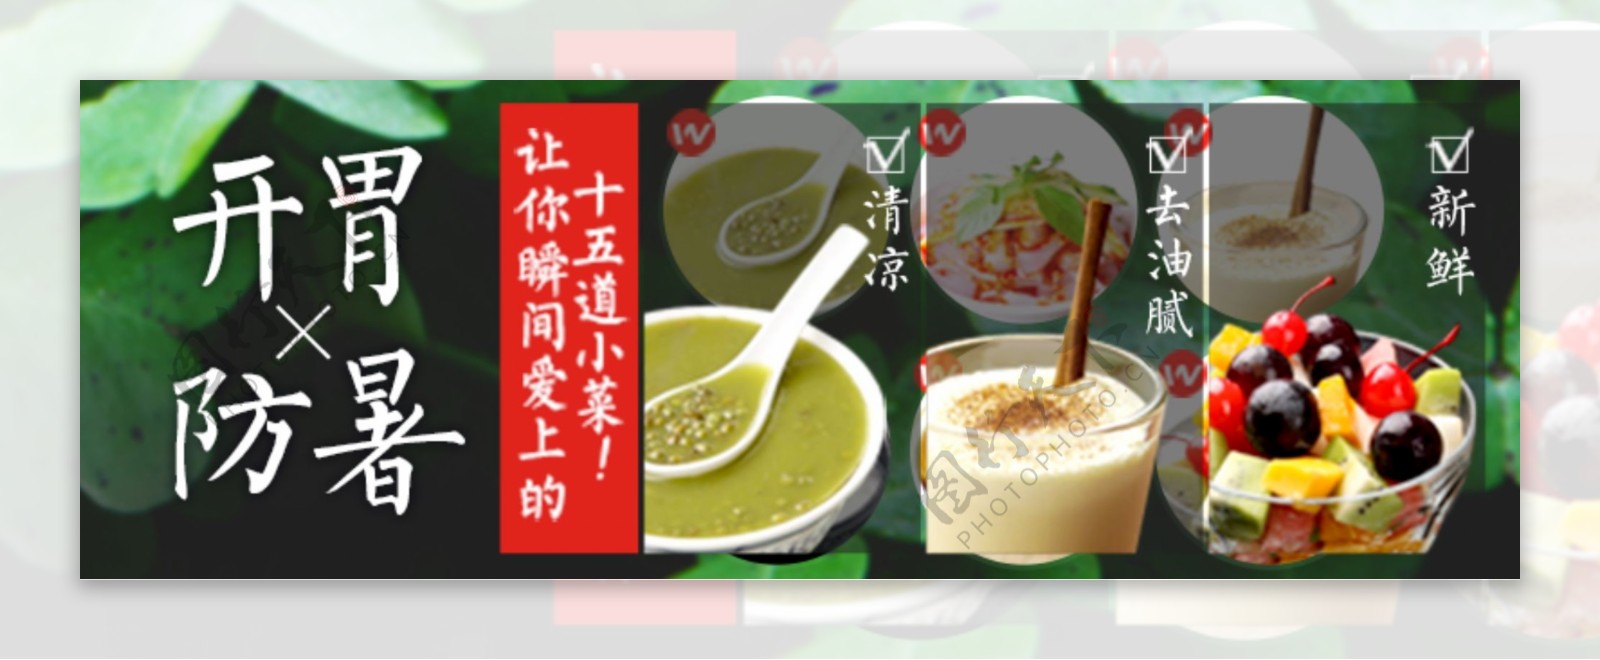 食品促销banner大图设计